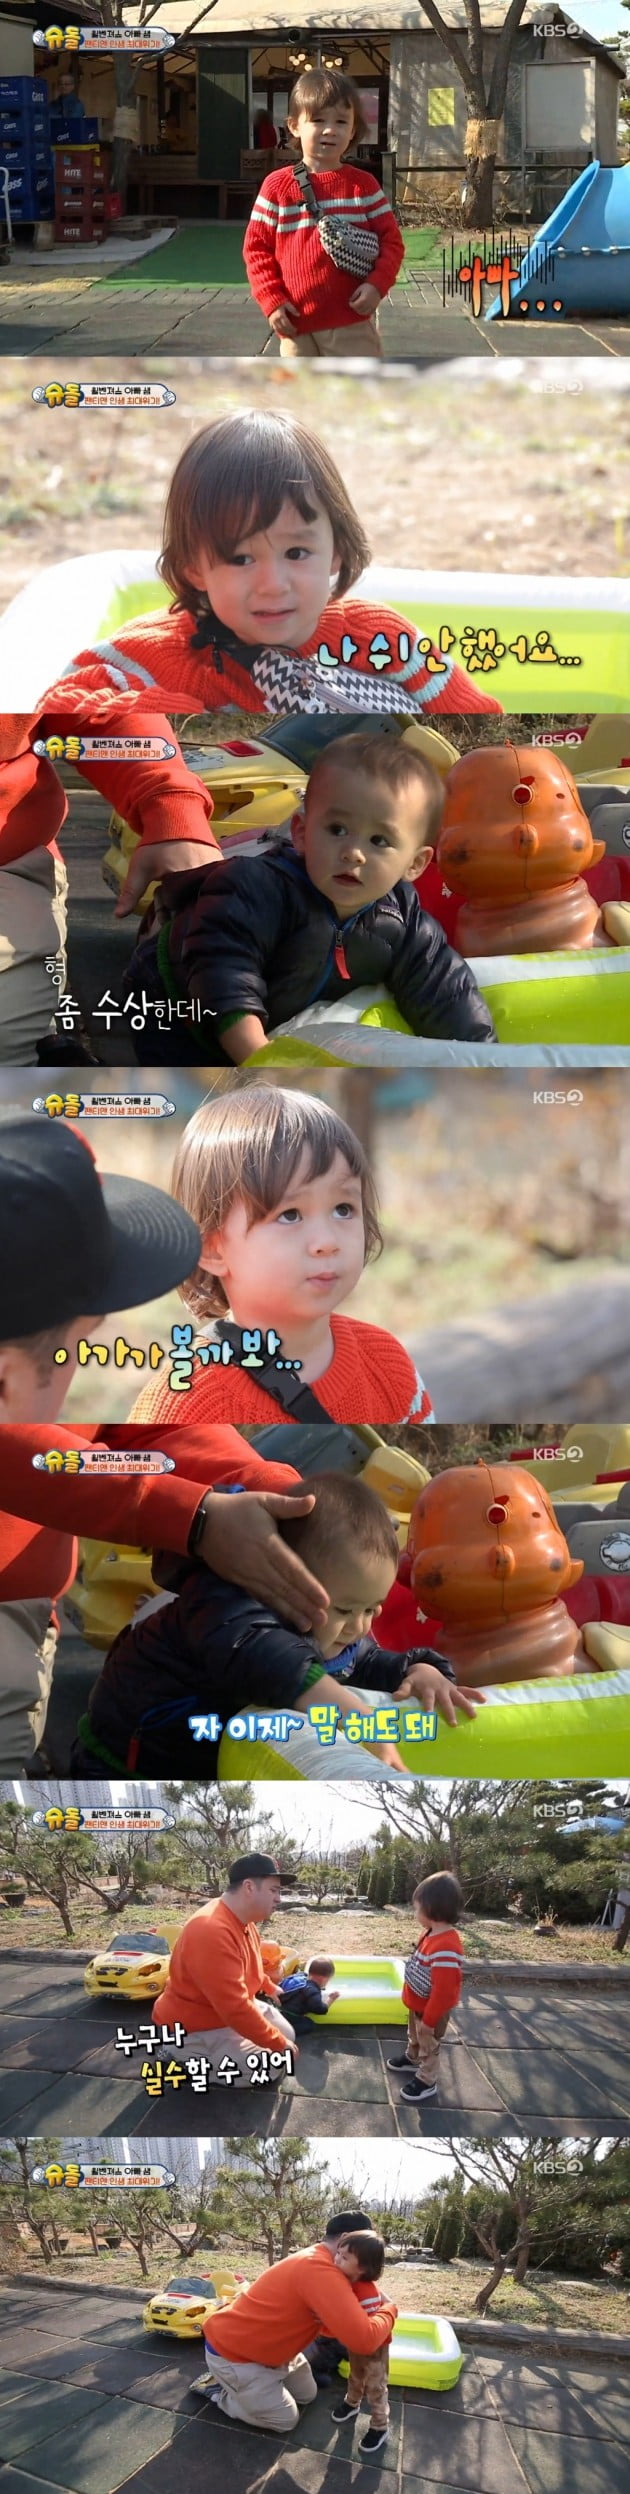 '슈돌' 윌리엄 자존감 높여준 교육법 화제 /사진=KBS2 방송화면 캡처